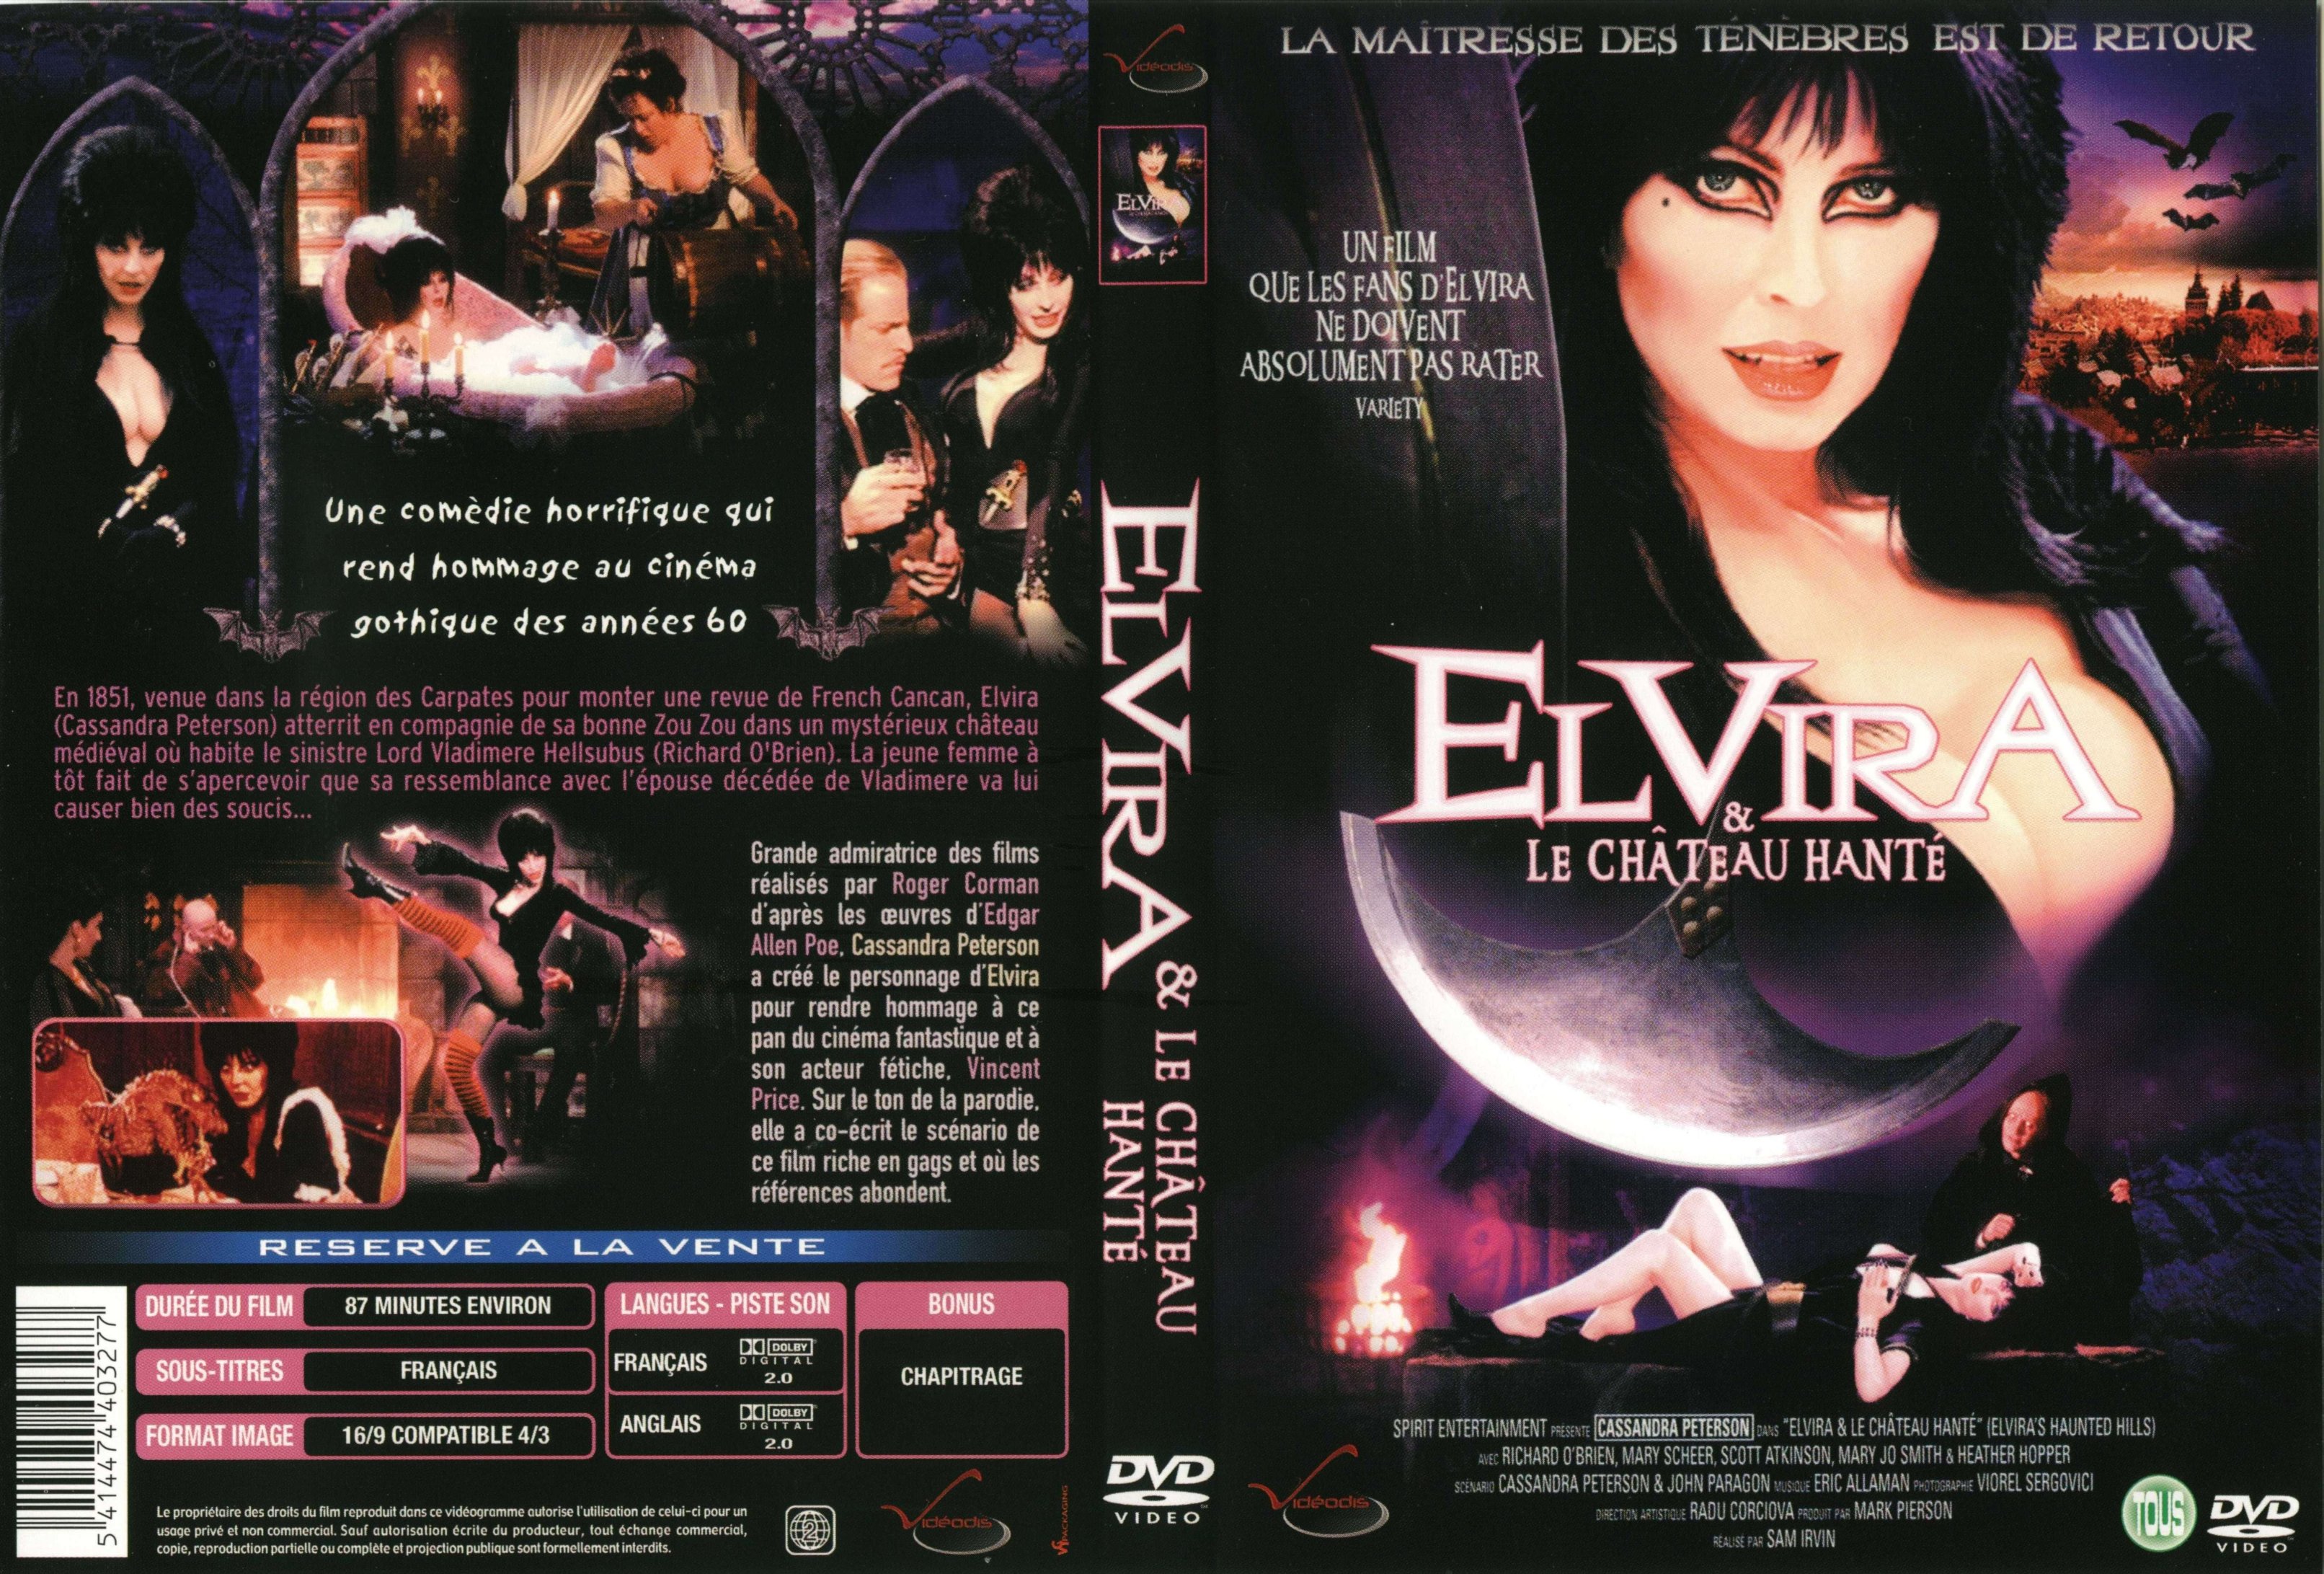 Jaquette DVD Elvira et le chateau hant